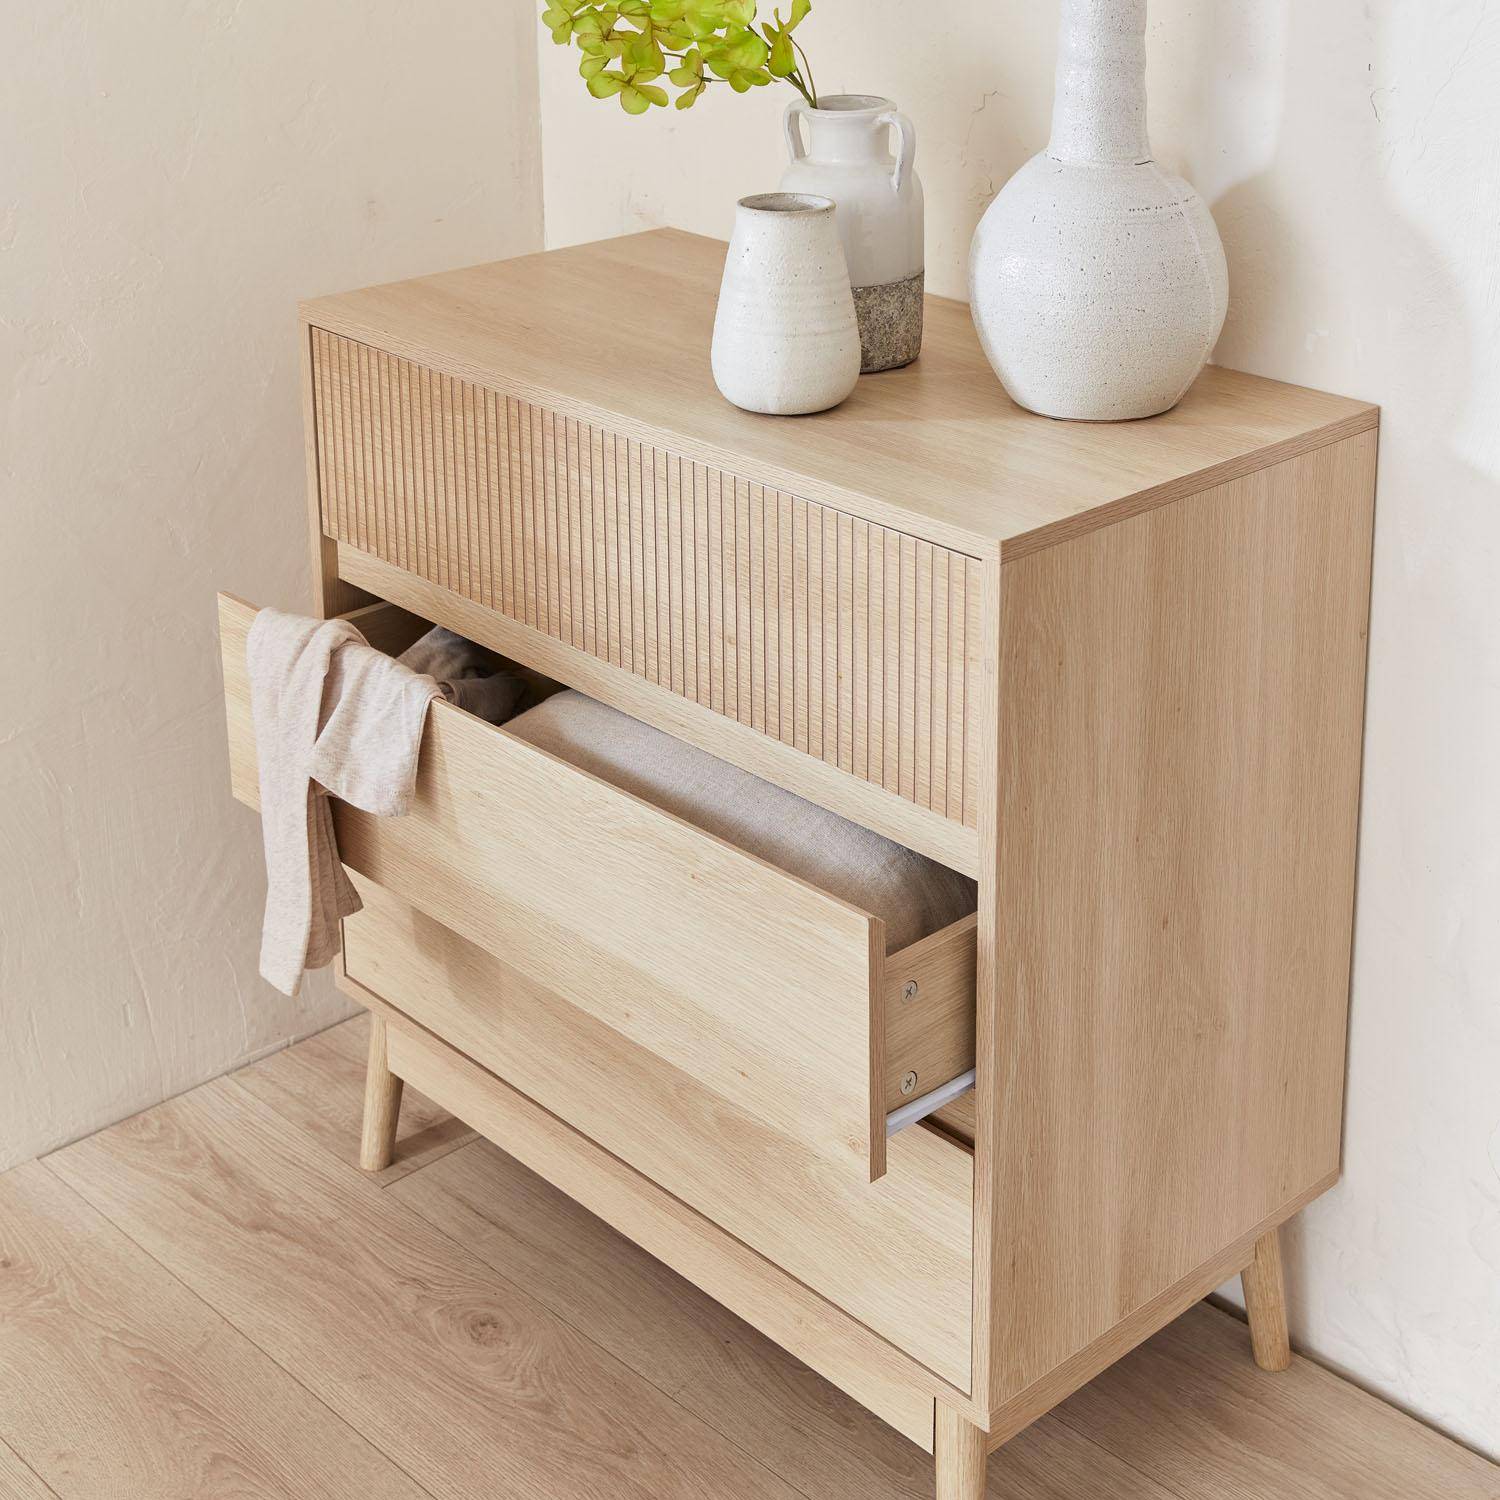 Commode de rangement décor bois, 3 tiroirs - Linear Photo2